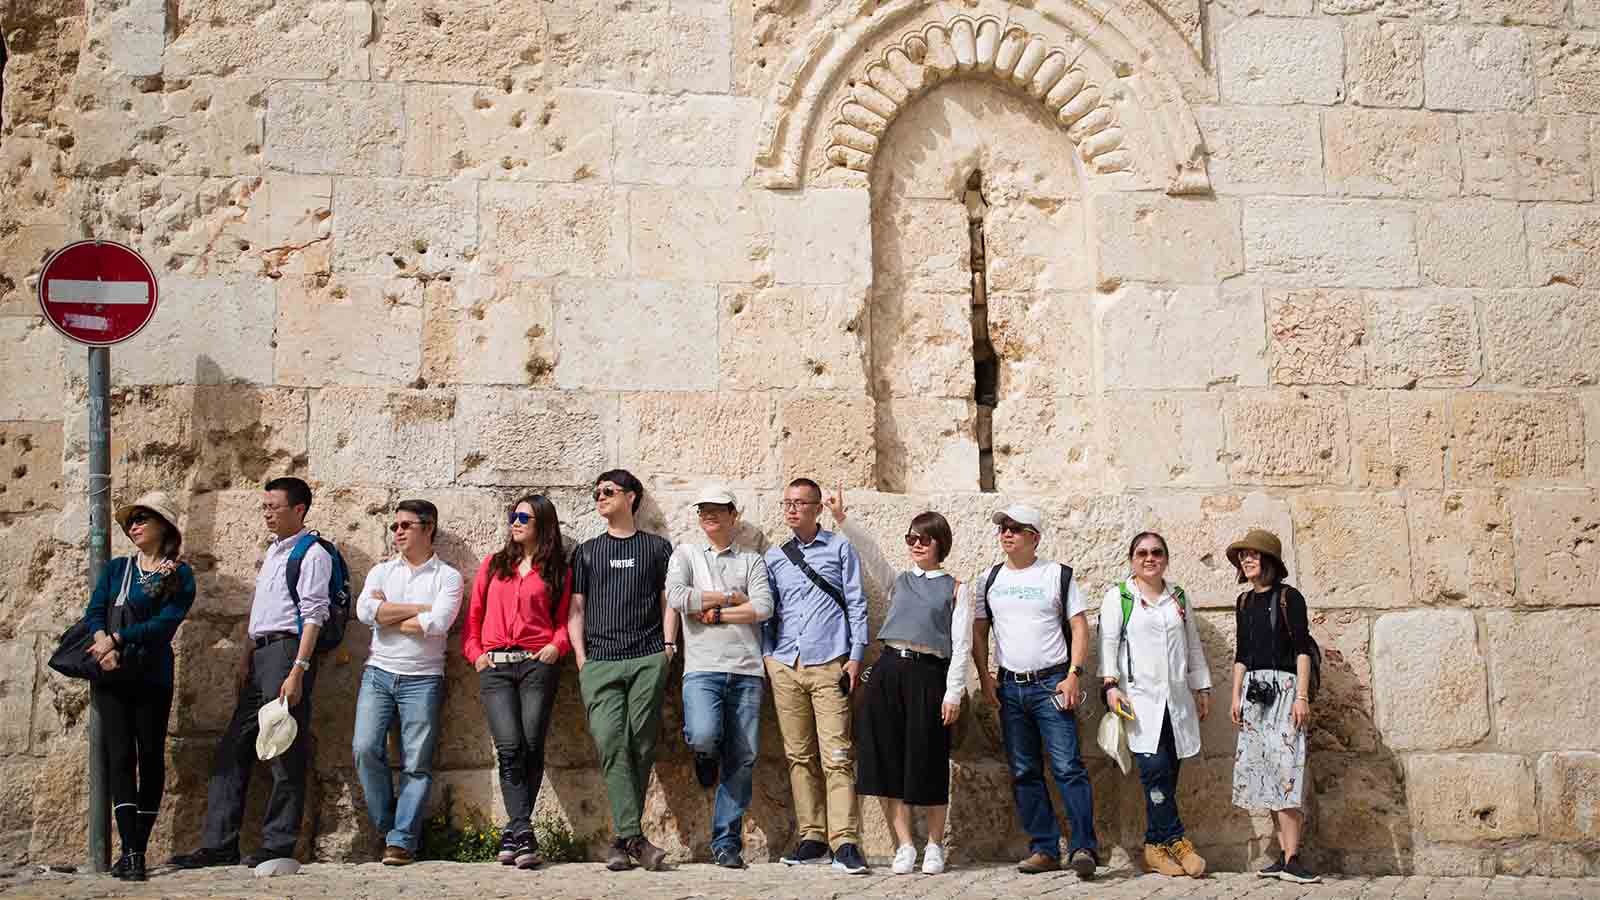 קבוצת תיירים בעיר העתיקה בירושלים מקשיבה למדריך הטיולים שלה. ארכיון למצולמים אין קשר לכתבה (צילום: קורינה קרן/ פלאש90)